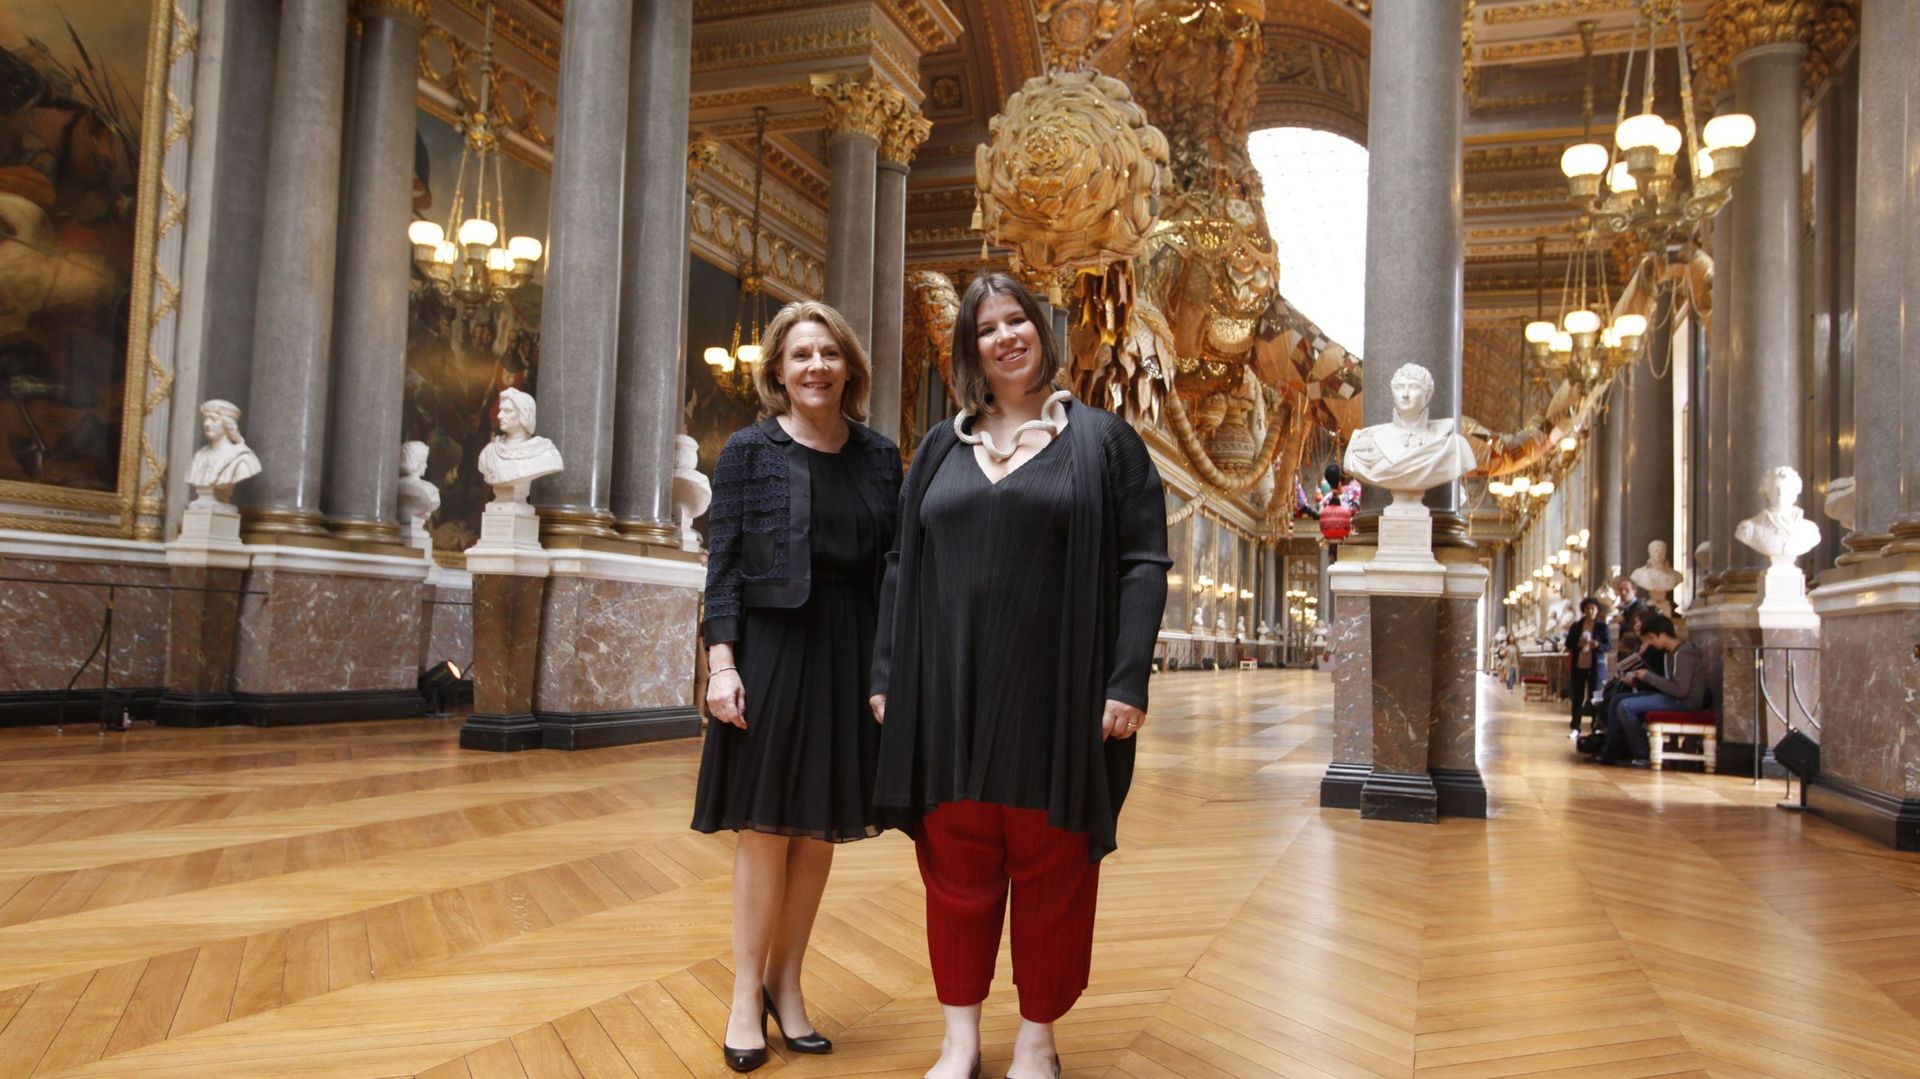 Dans la galerie des Batailles, Catherine Pégard, Présidente de Versailles, et Joana Vasconcelos devant ses "Walkyries".